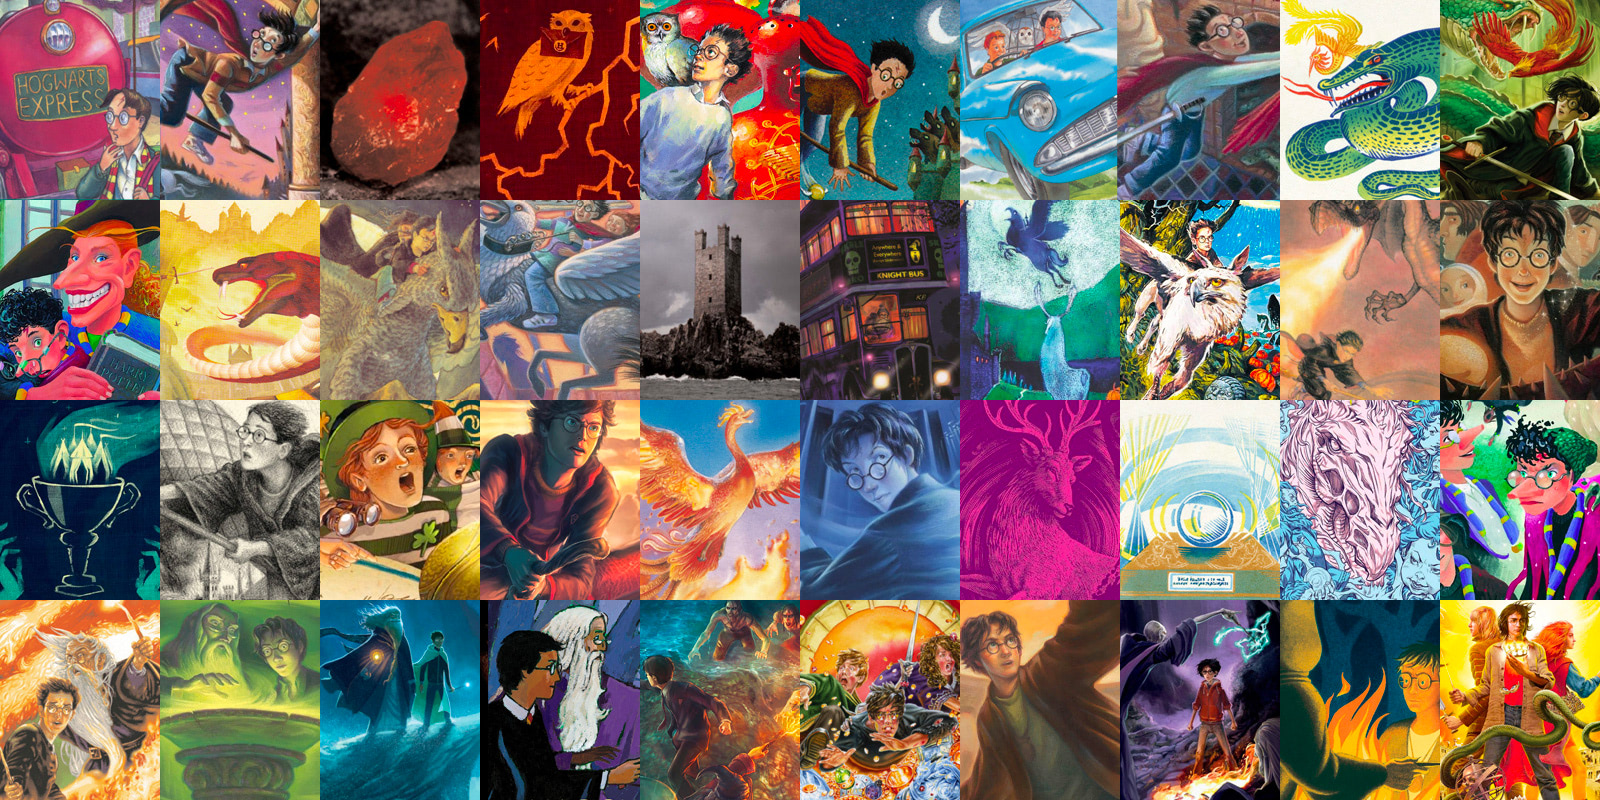 Oferta barrera Apariencia Book covers — Harry Potter Fan Zone